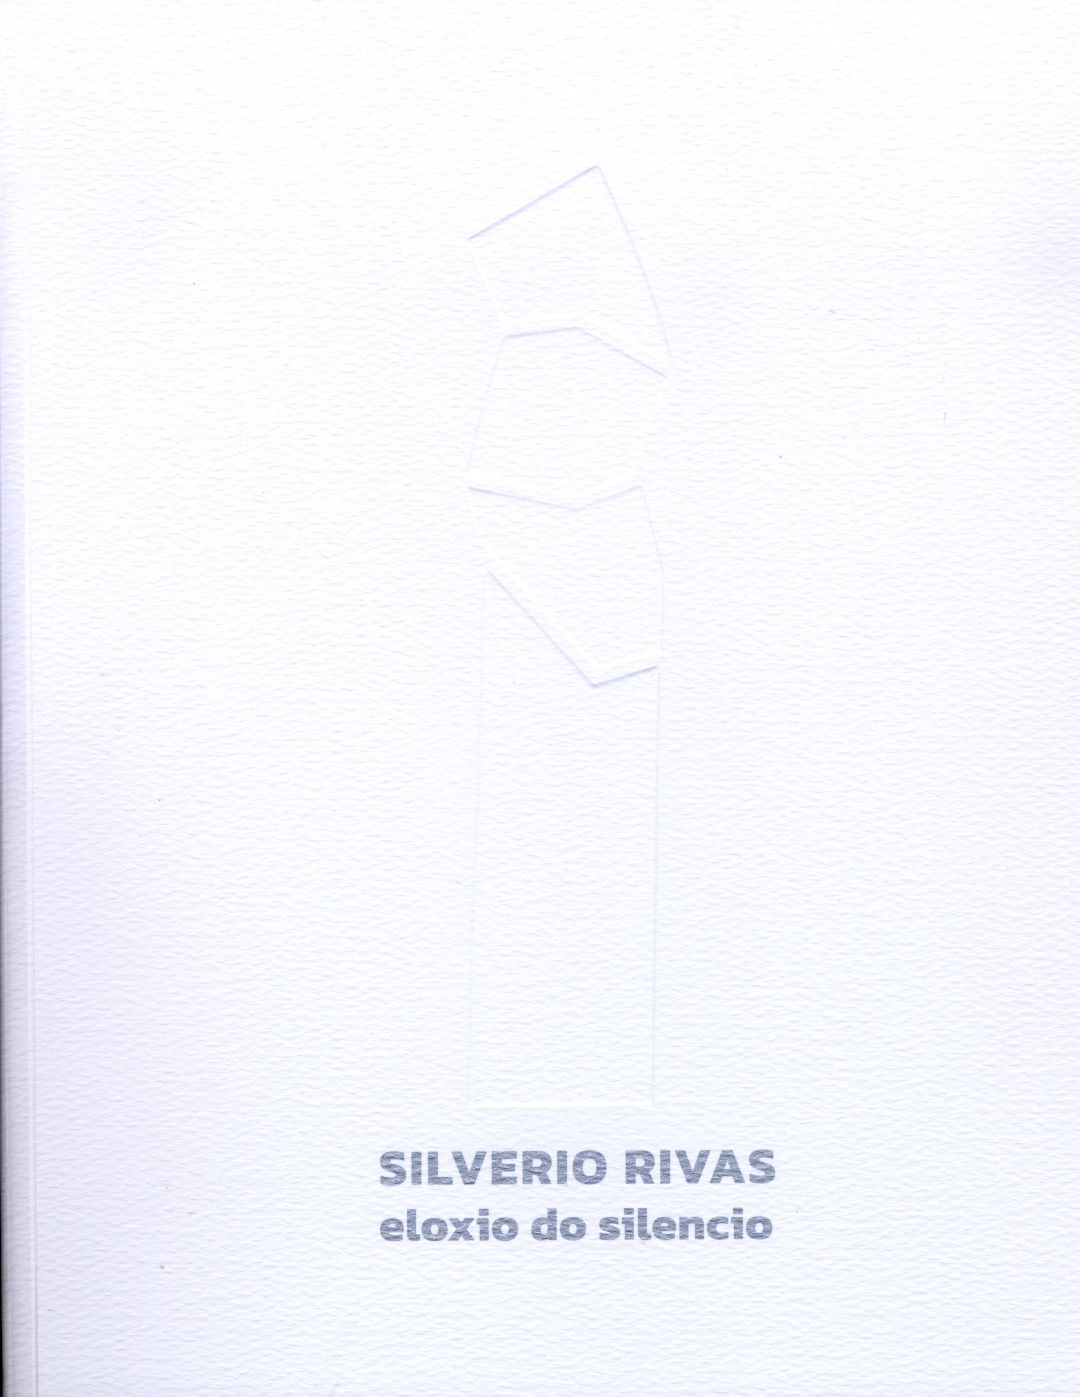 Silverio Rivas. Eloxio do silencio